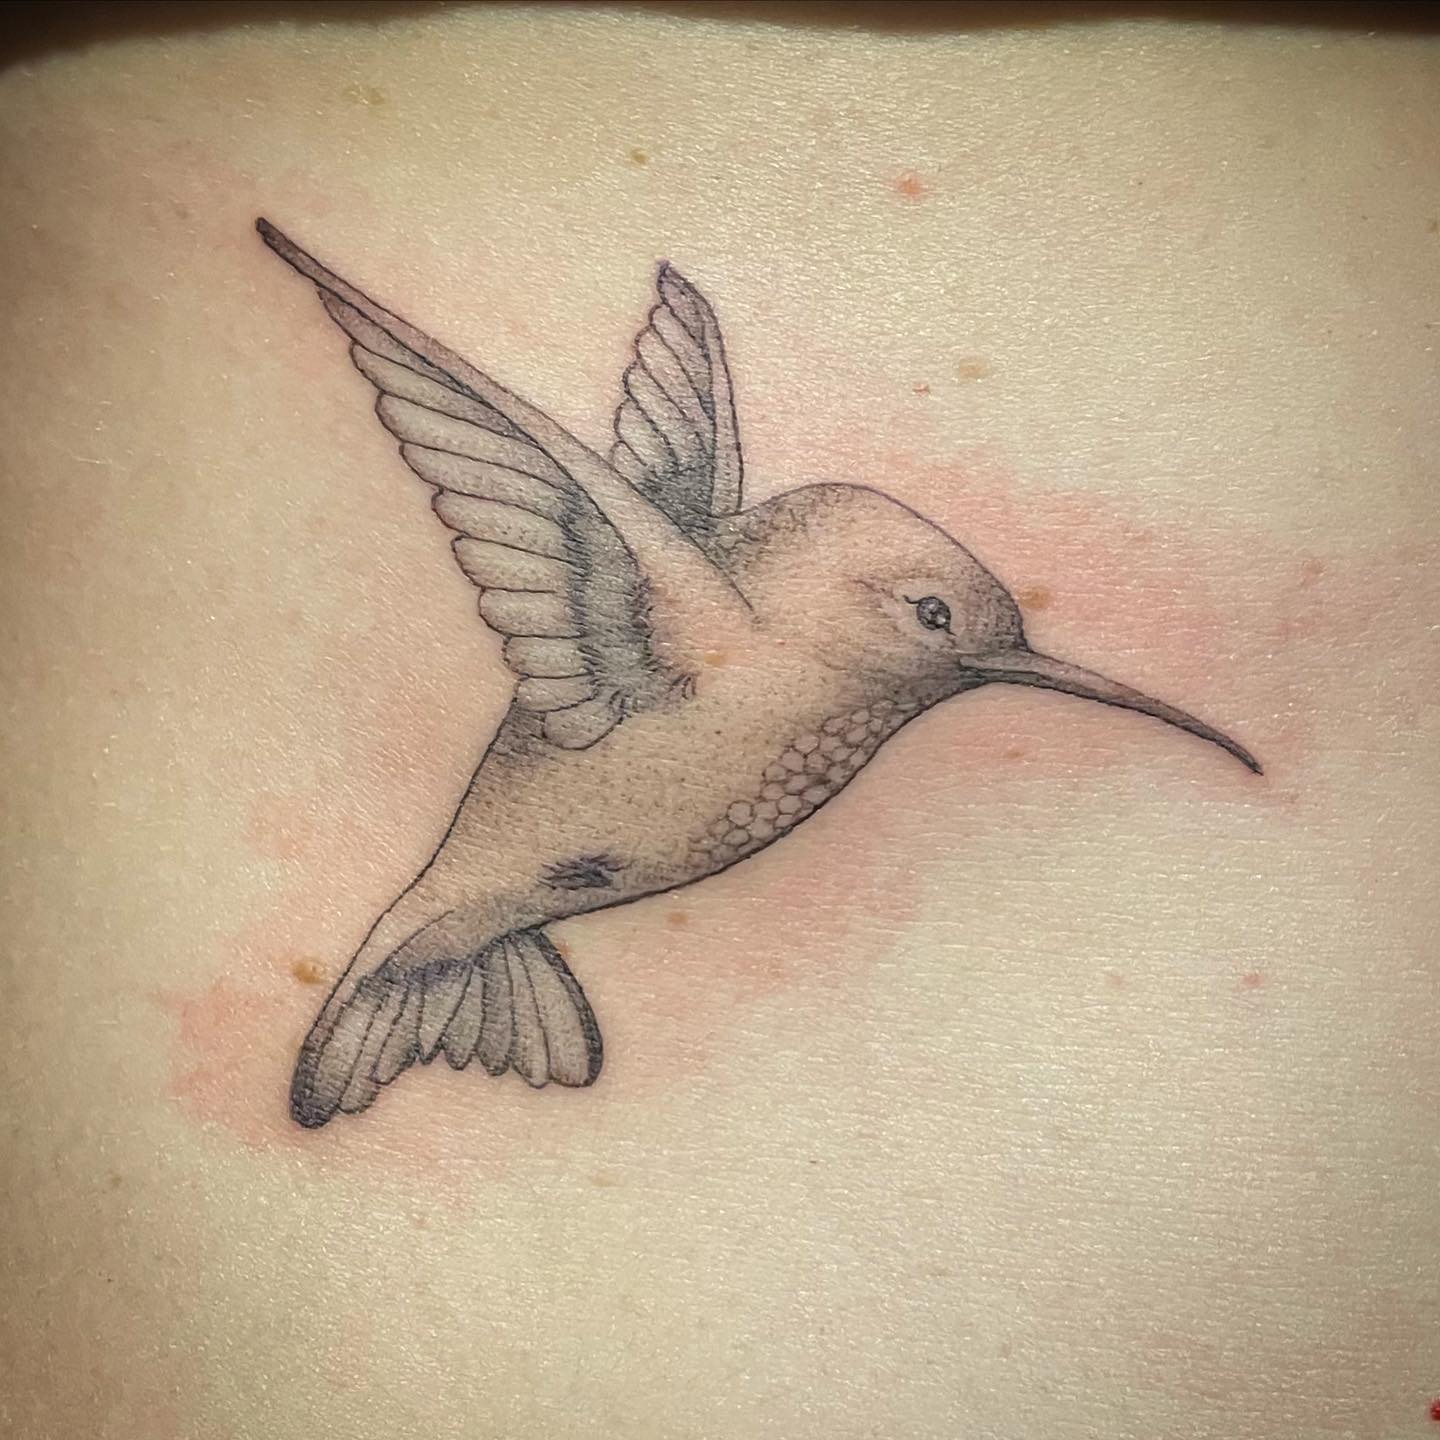 Kleiner Kolibri 
•
•
•
•
#inked #inkedgirls #inkedup #ink #tattoos #tattoo #tatt